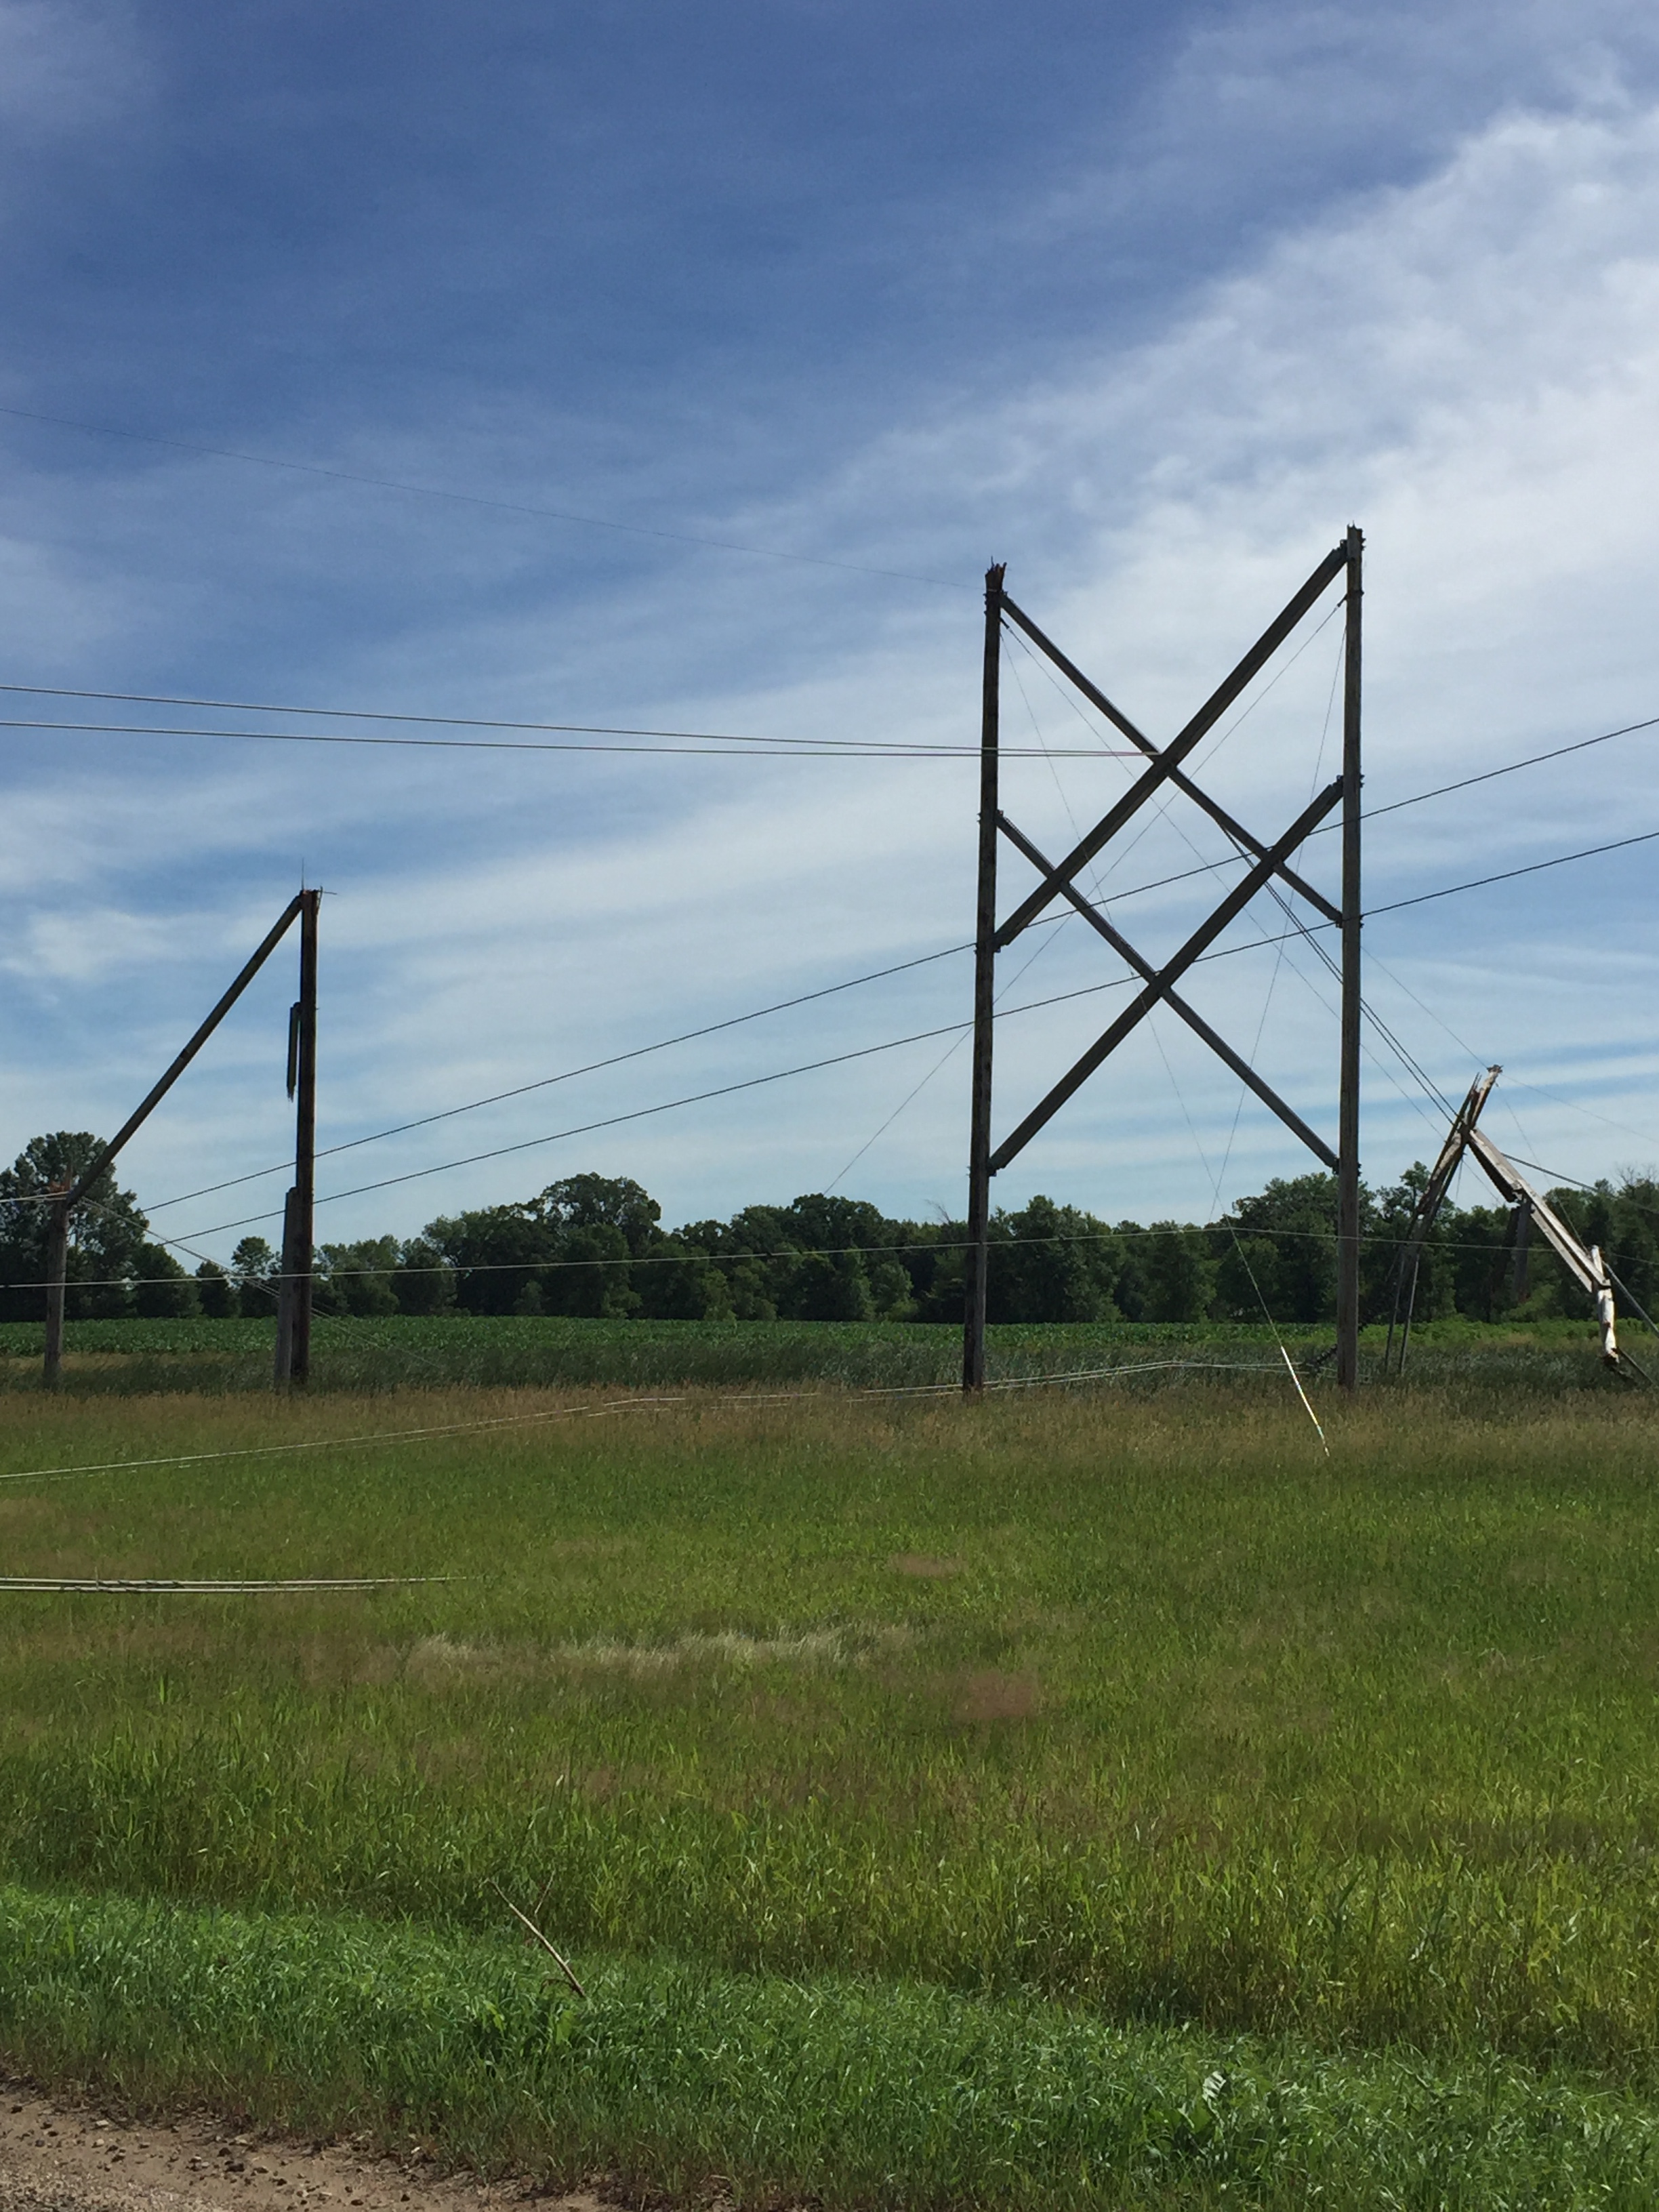 Broken power line poles in a field. 